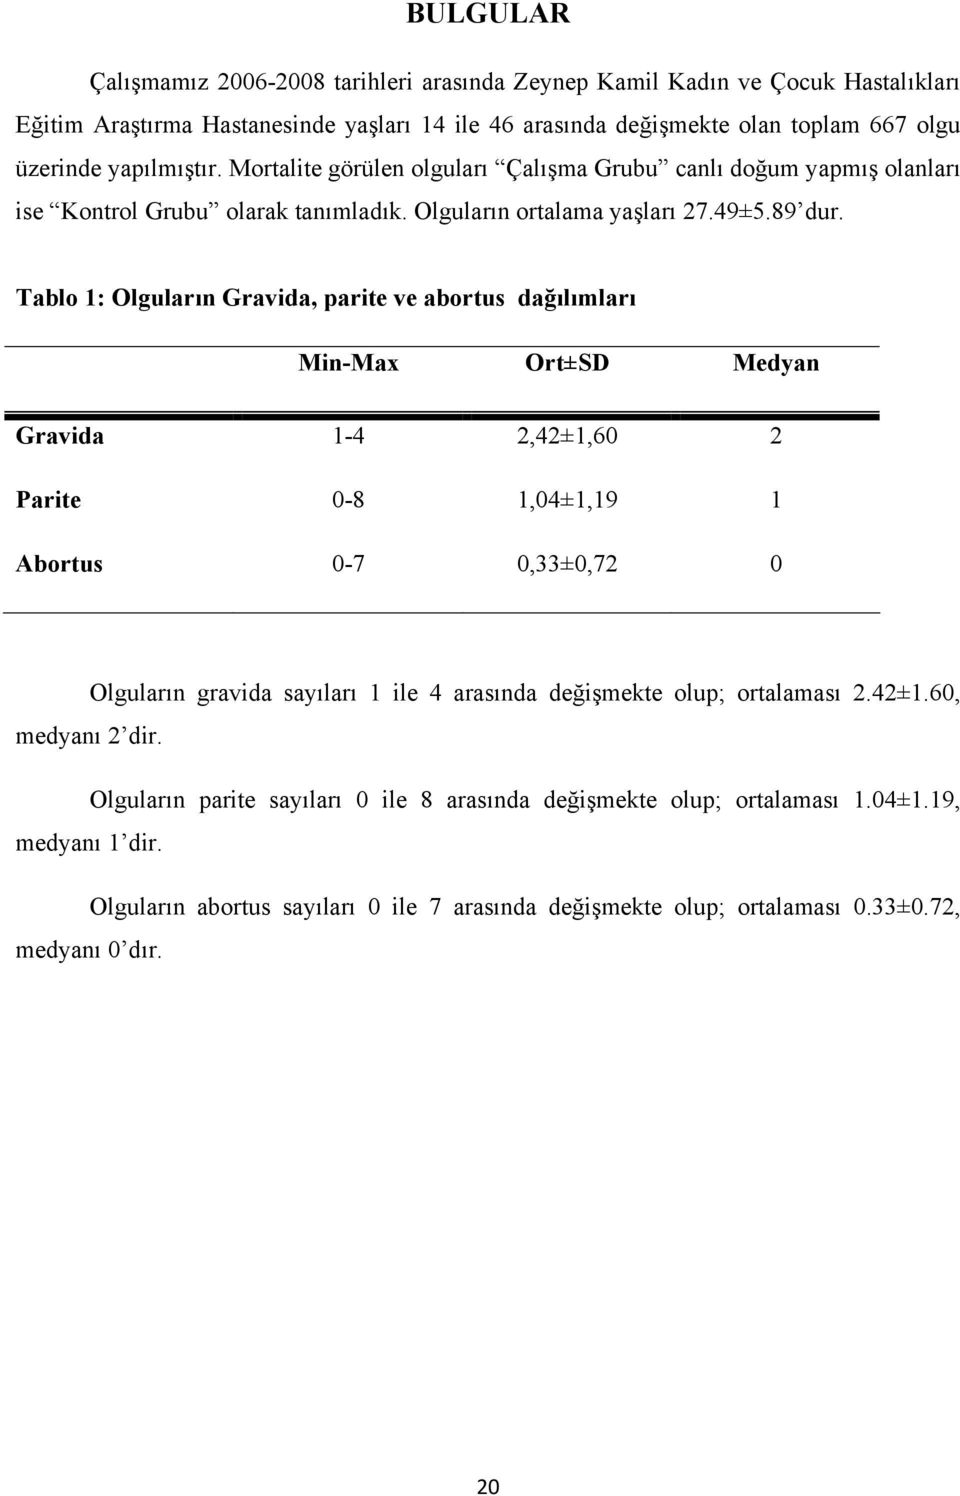 Tablo 1: Olguların Gravida, parite ve abortus dağılımları Min-Max Ort±SD Medyan Gravida 1-4 2,42±1,60 2 Parite 0-8 1,04±1,19 1 Abortus 0-7 0,33±0,72 0 Olguların gravida sayıları 1 ile 4 arasında